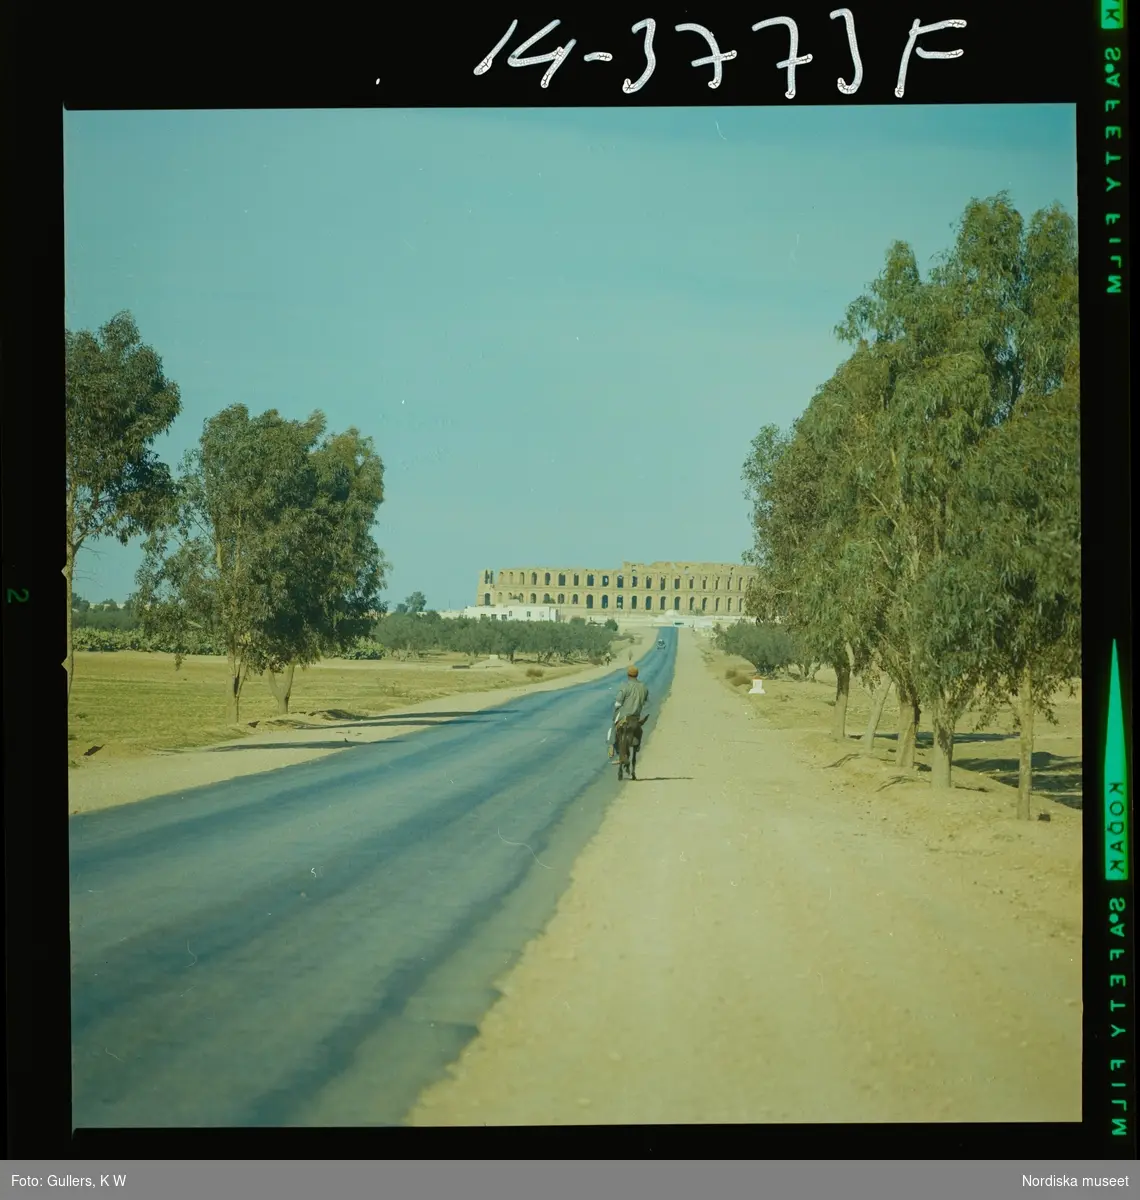 2791 Tunisien. Väg fram till amfiteatern i El Djem. En man ridandes på åsna färdas på vägen.